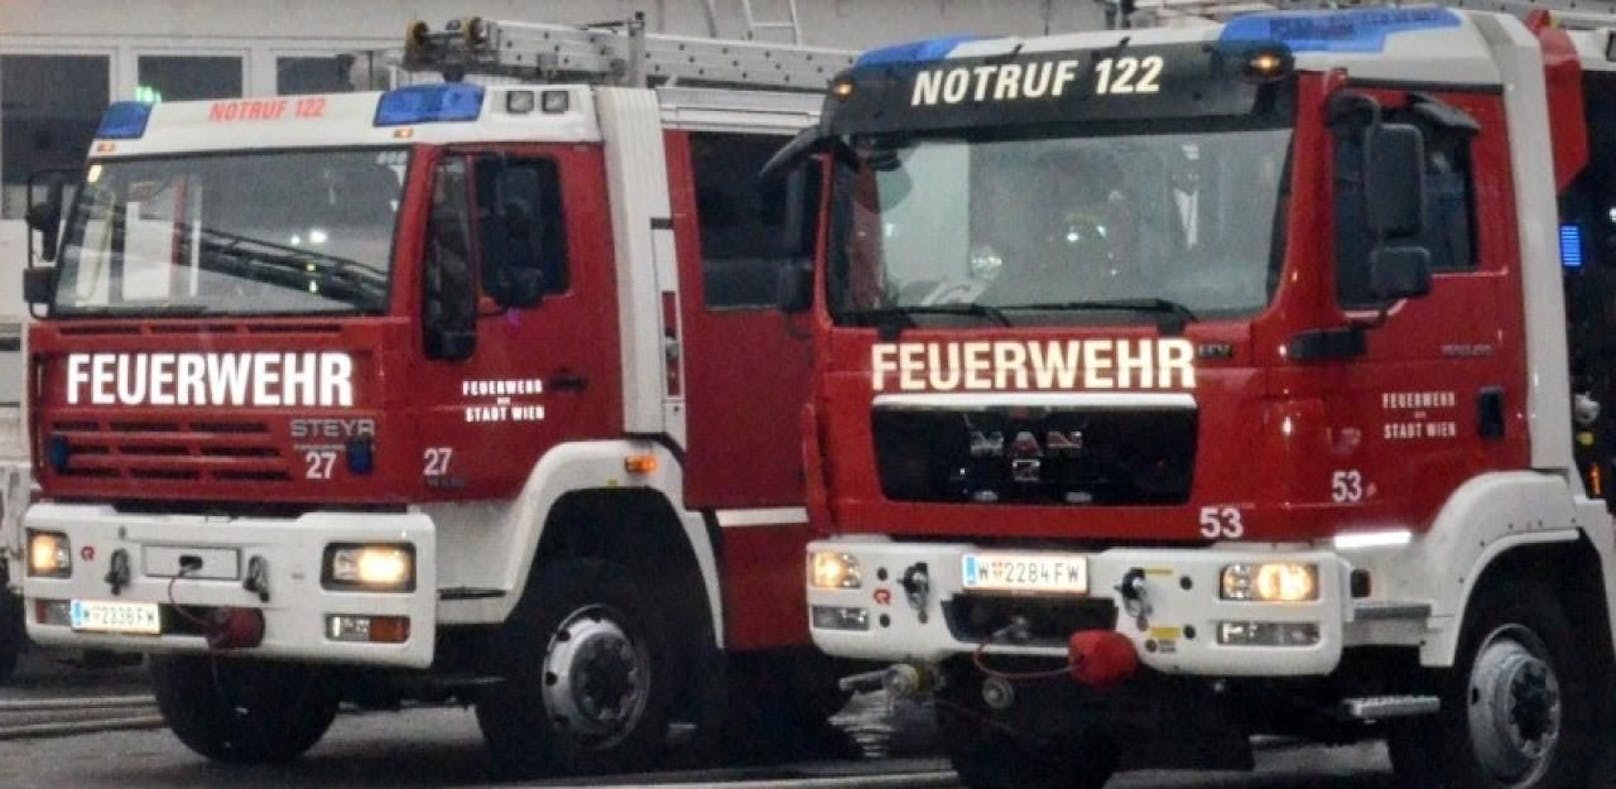 Die Wiener Berufsfeuerwehr war mit mehreren Fahrzeugen im Einsatz